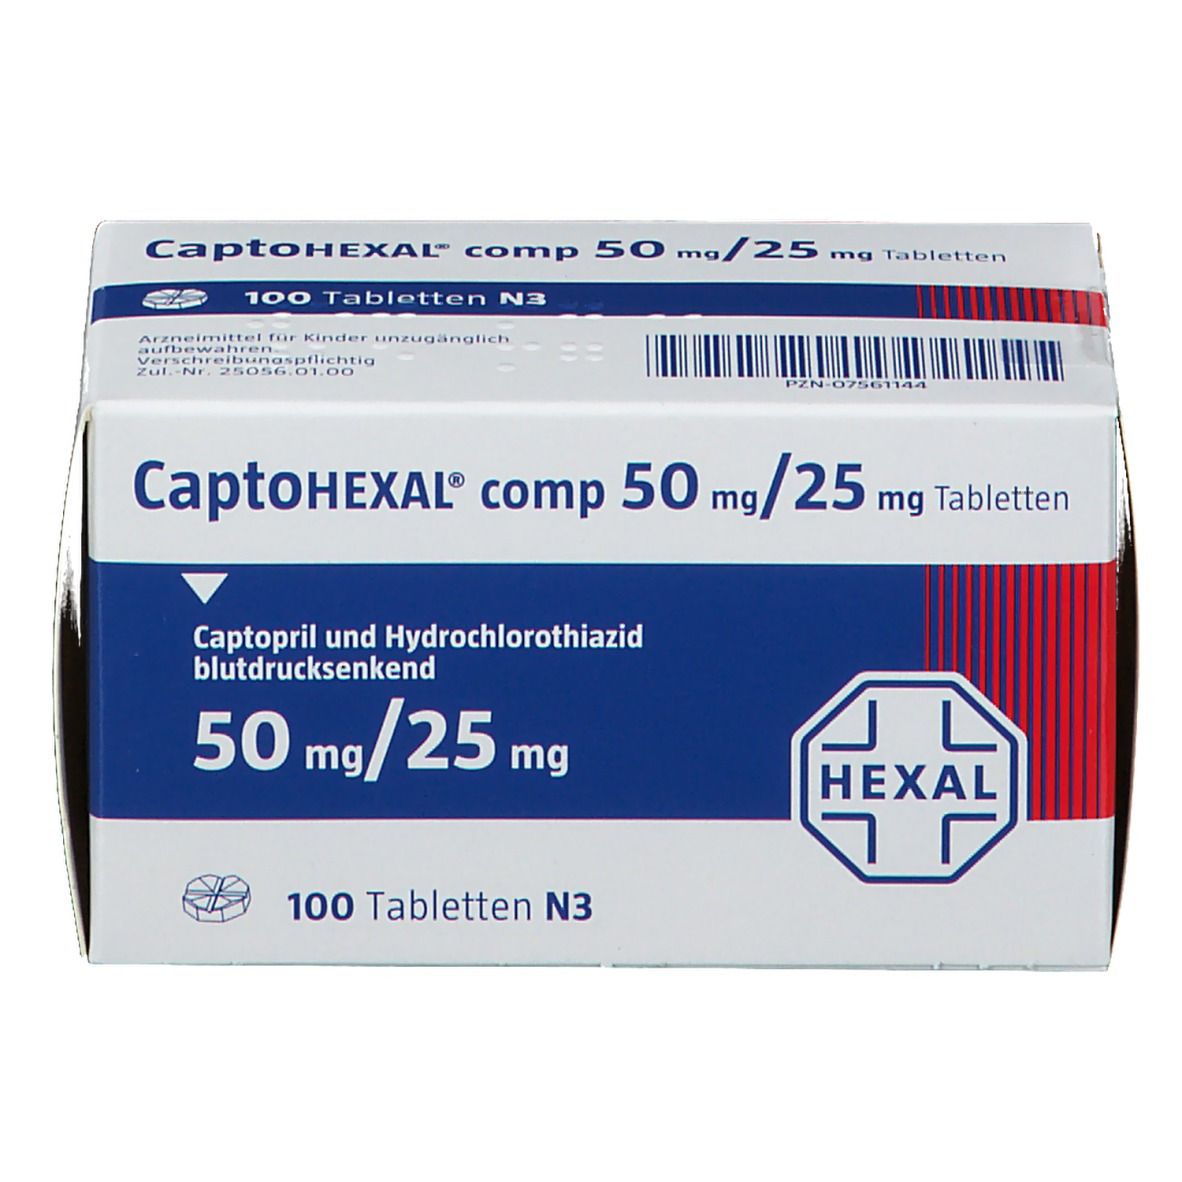 CaptoHEXAL® comp 50 mg/25 mg